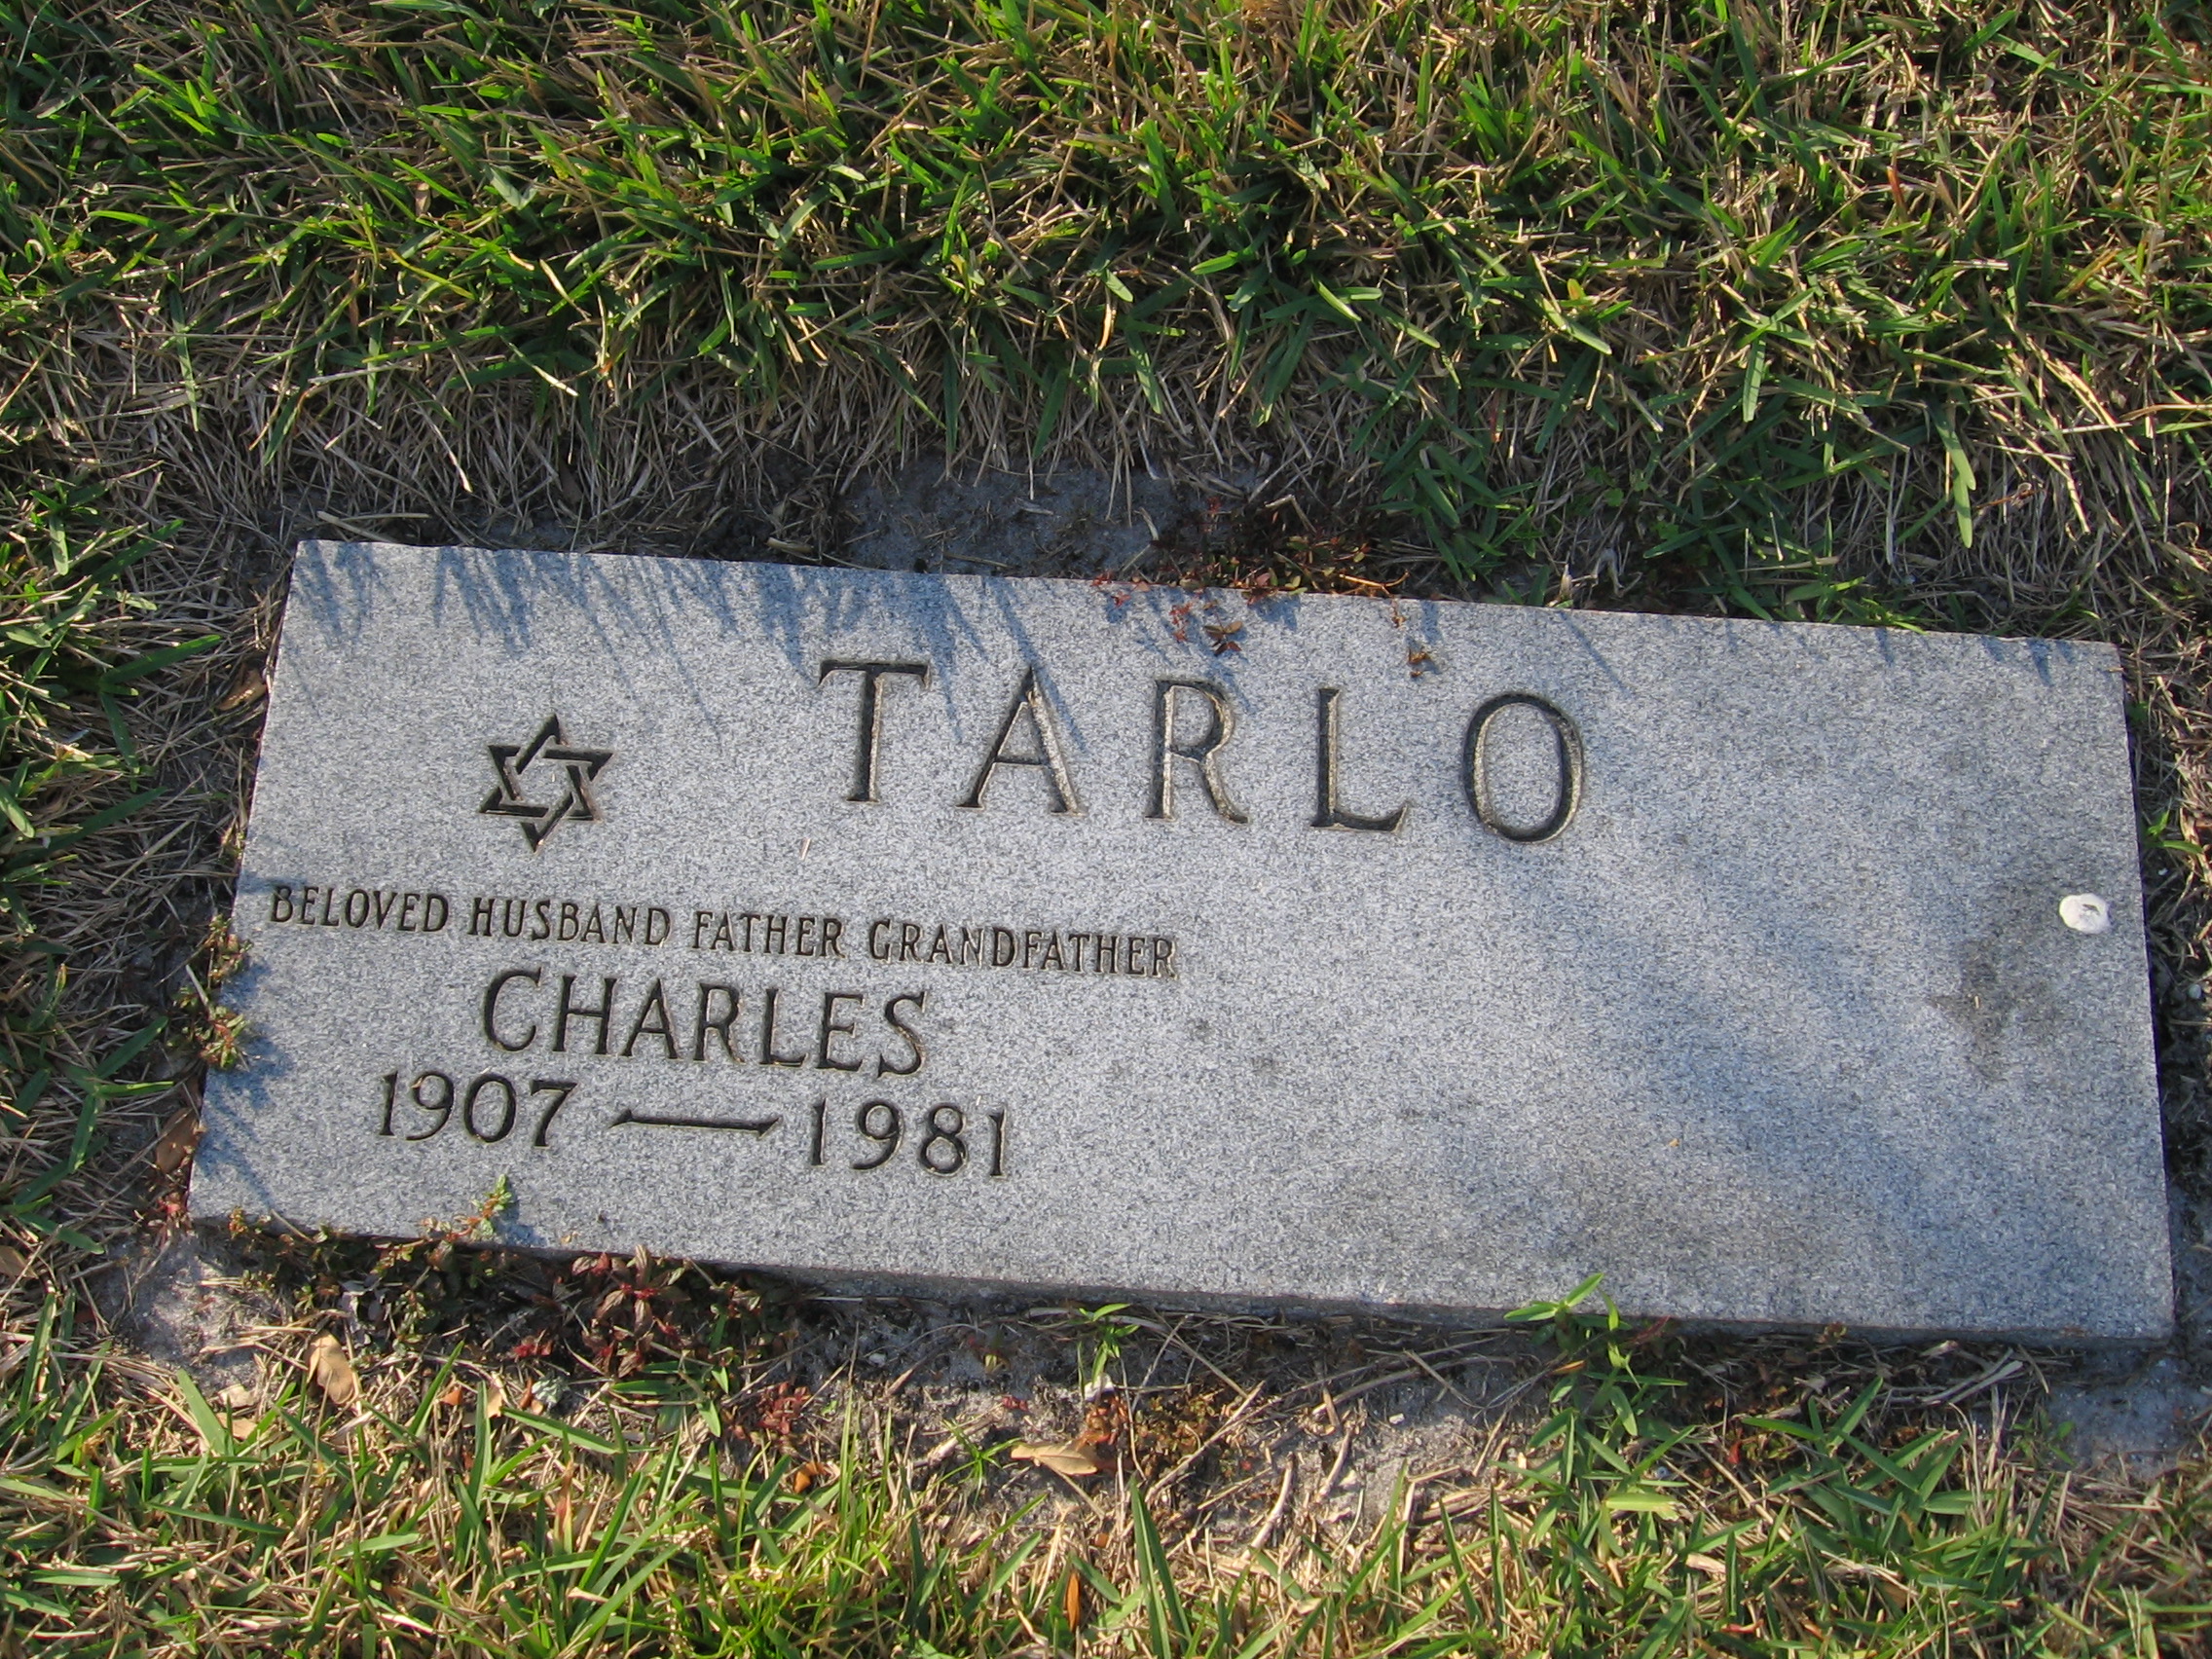 Charles Tarlo